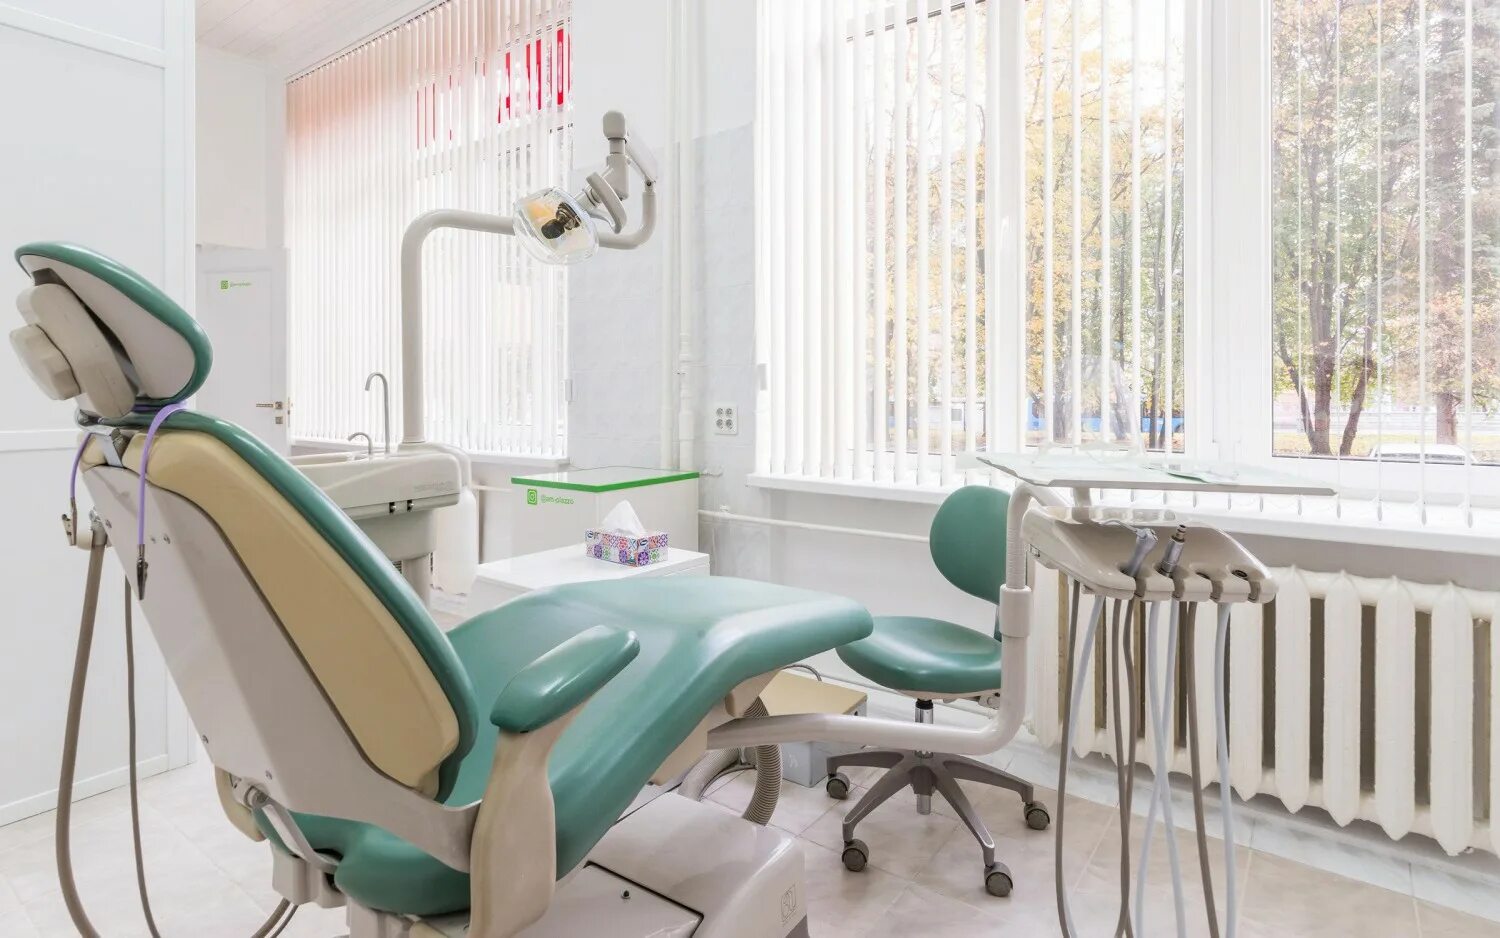 Стоматология ам клиник. Хирургический кабинет. Стоматология инструменты панорама кабинет. М-плаззо стоматология.